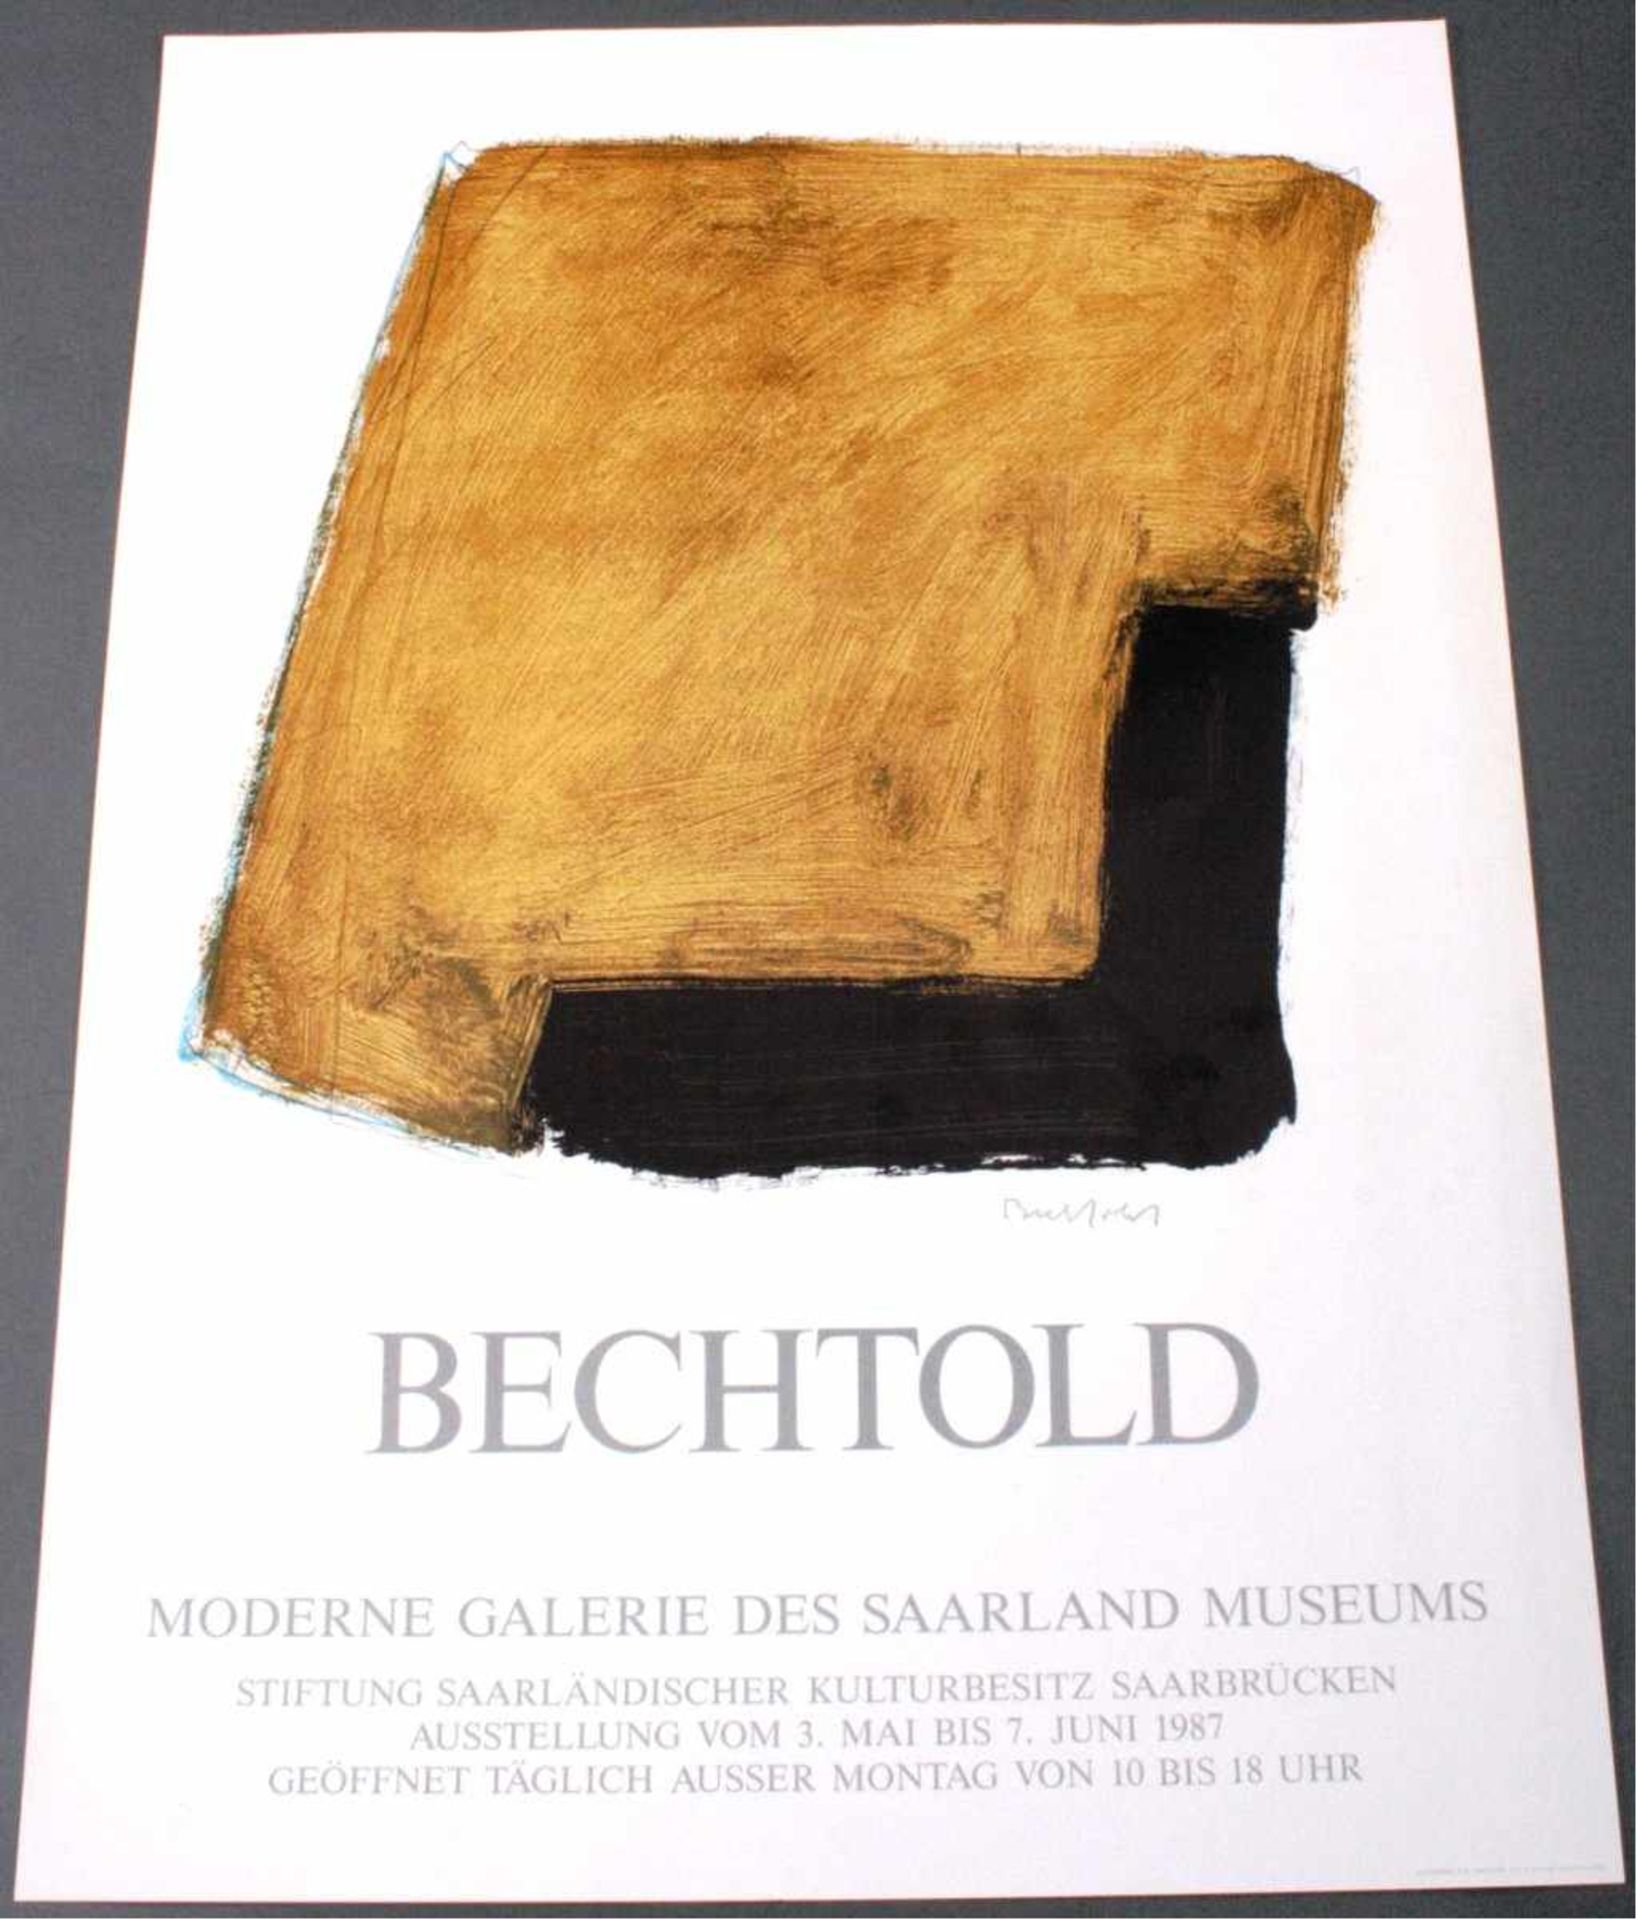 Erwin Bechtold (1925)Ausstellungsplakat. Moderne Galerie des Saarlandes,Ausstellung vom 3. Mai bis